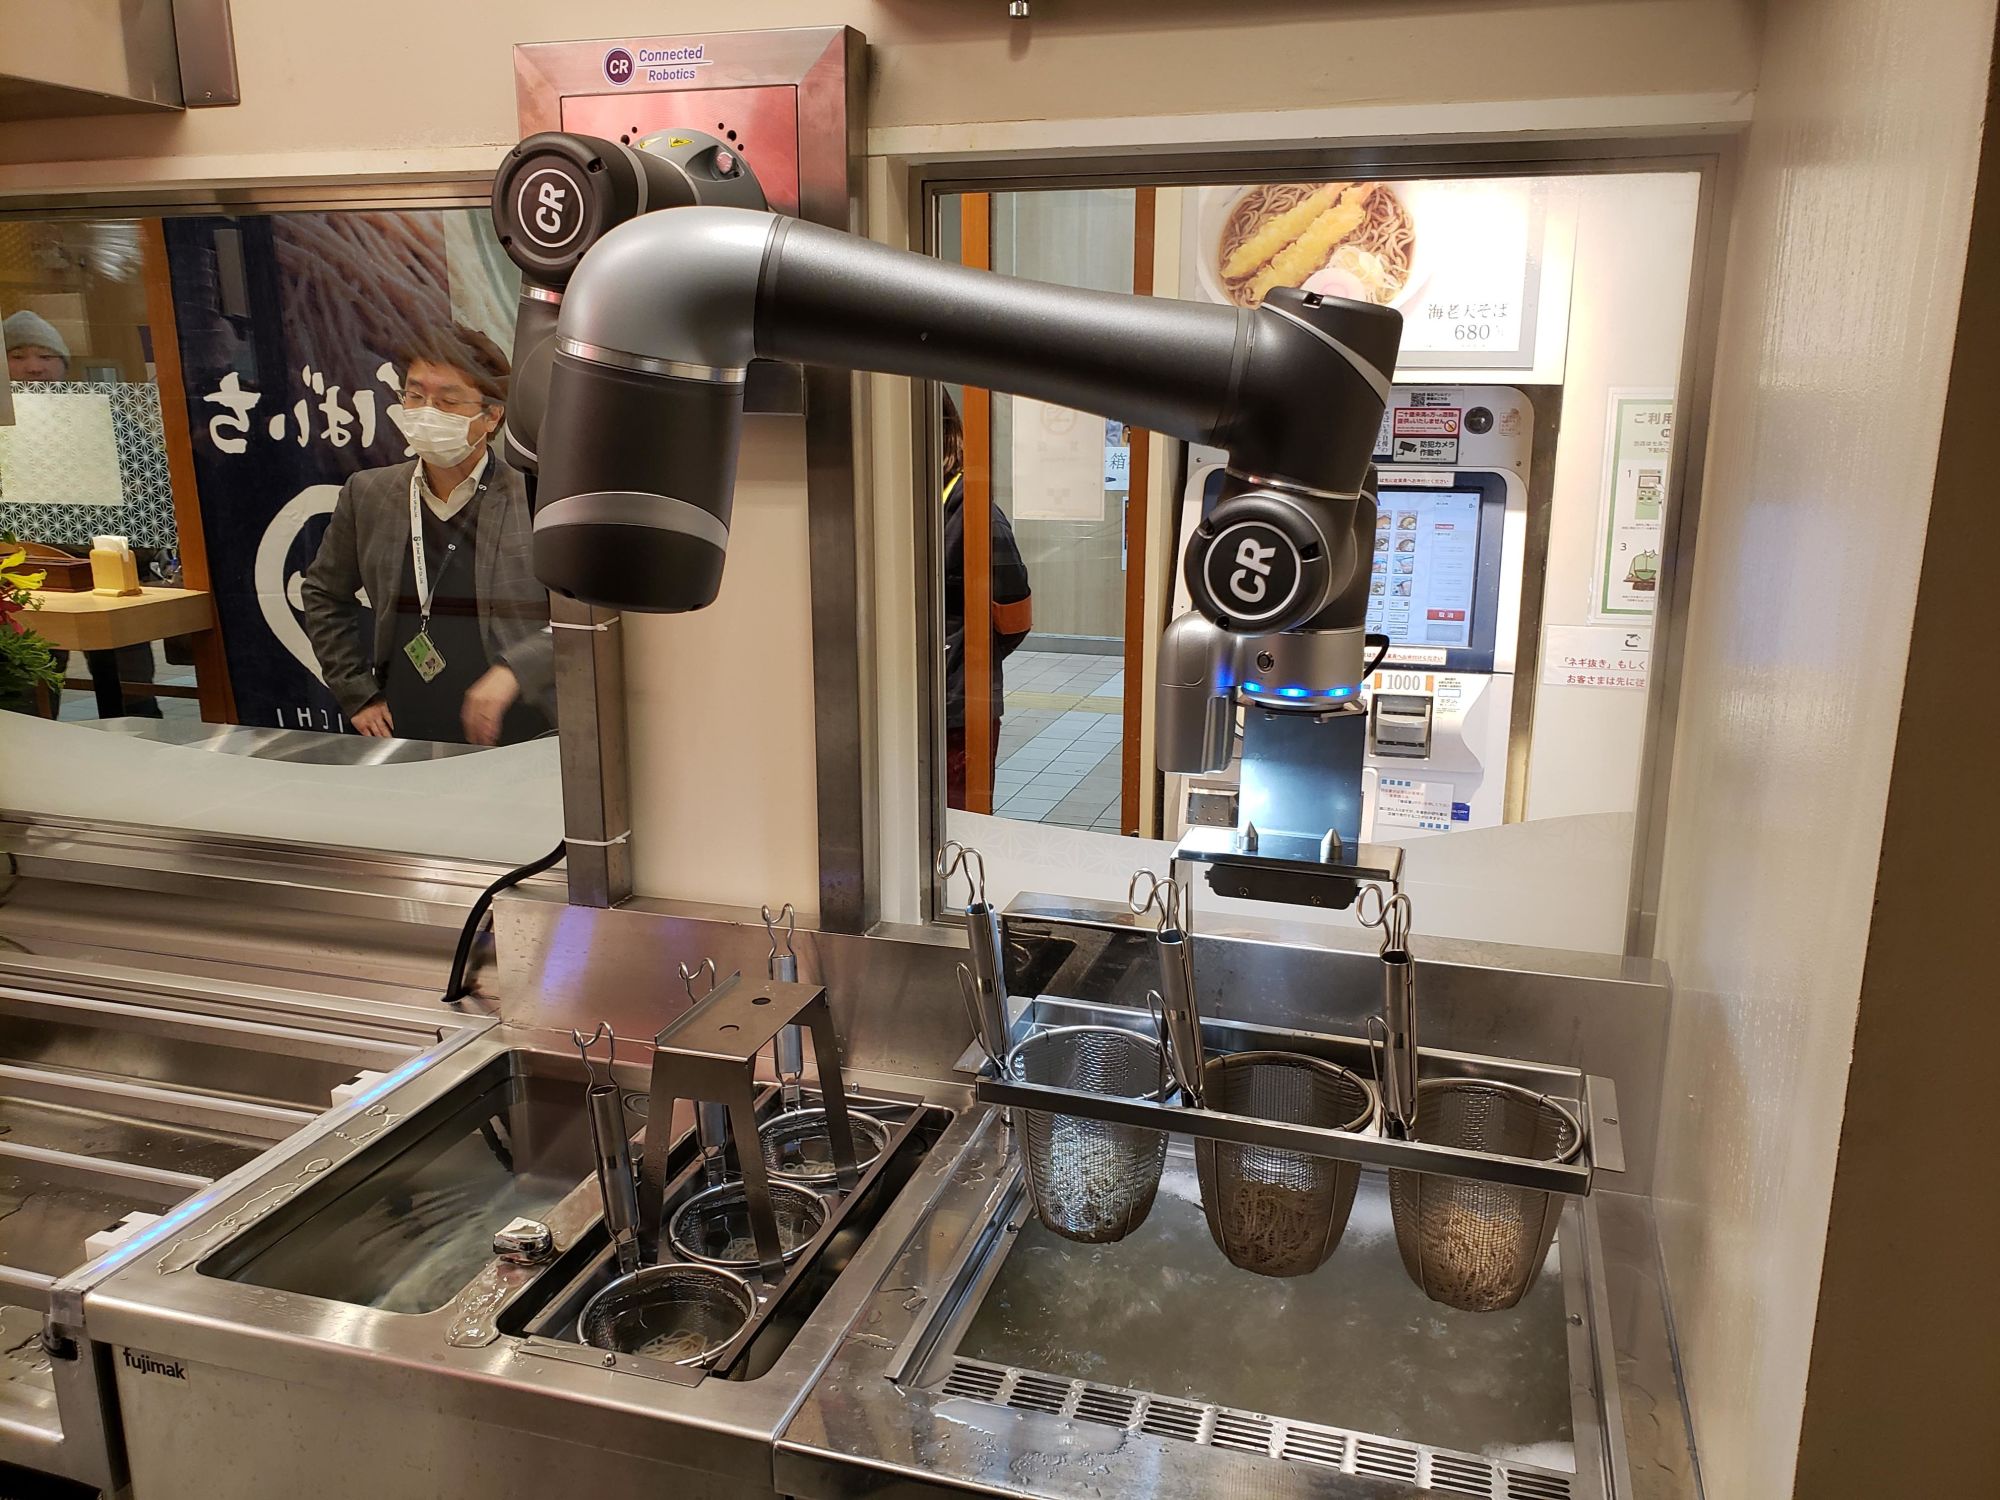 JR東小金井駅にて1時間で40食のそばを茹でる自動調理ロボットが稼働開始